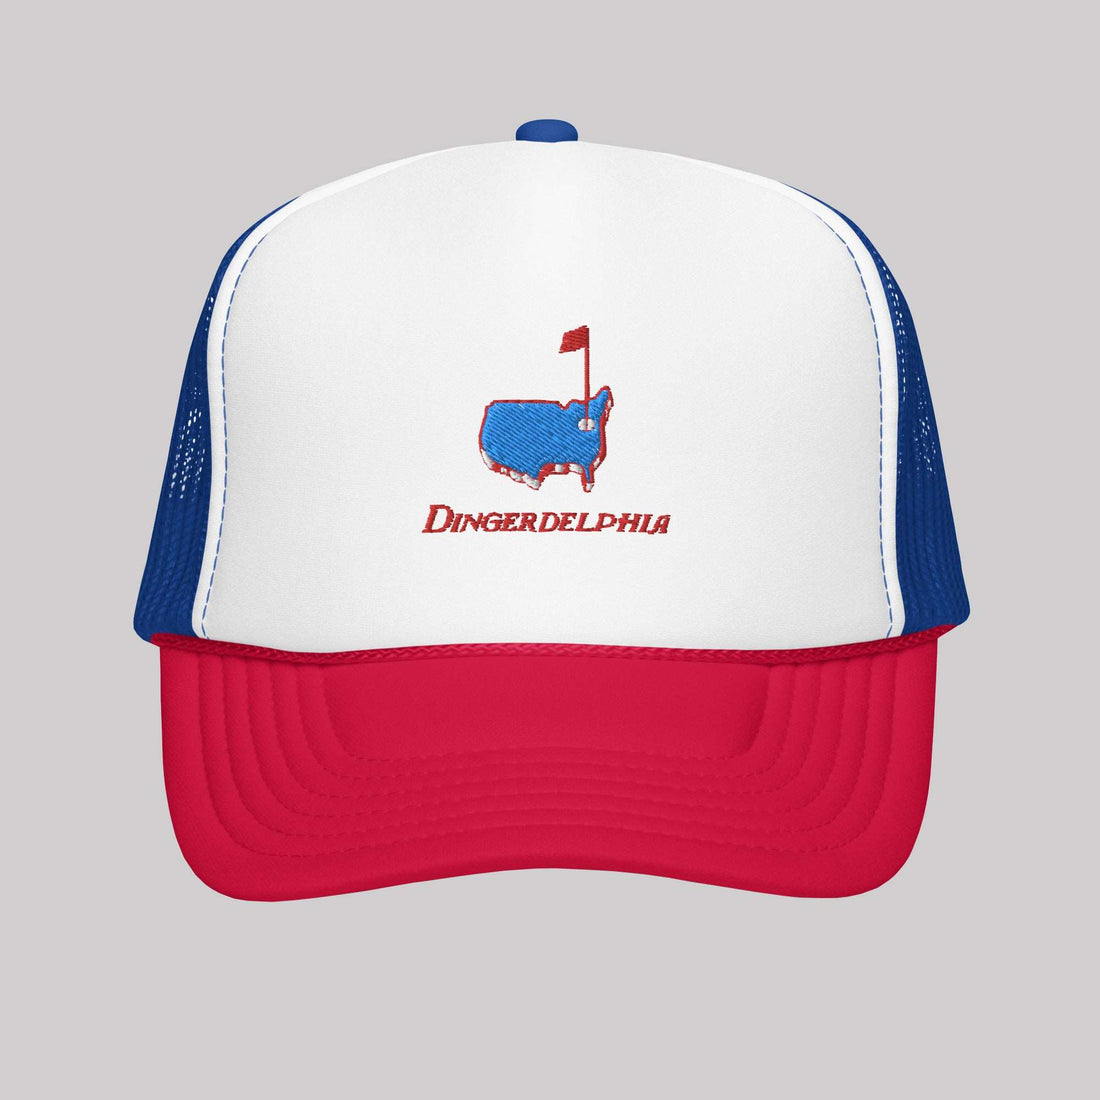 Dingerdelphia Trucker Hat